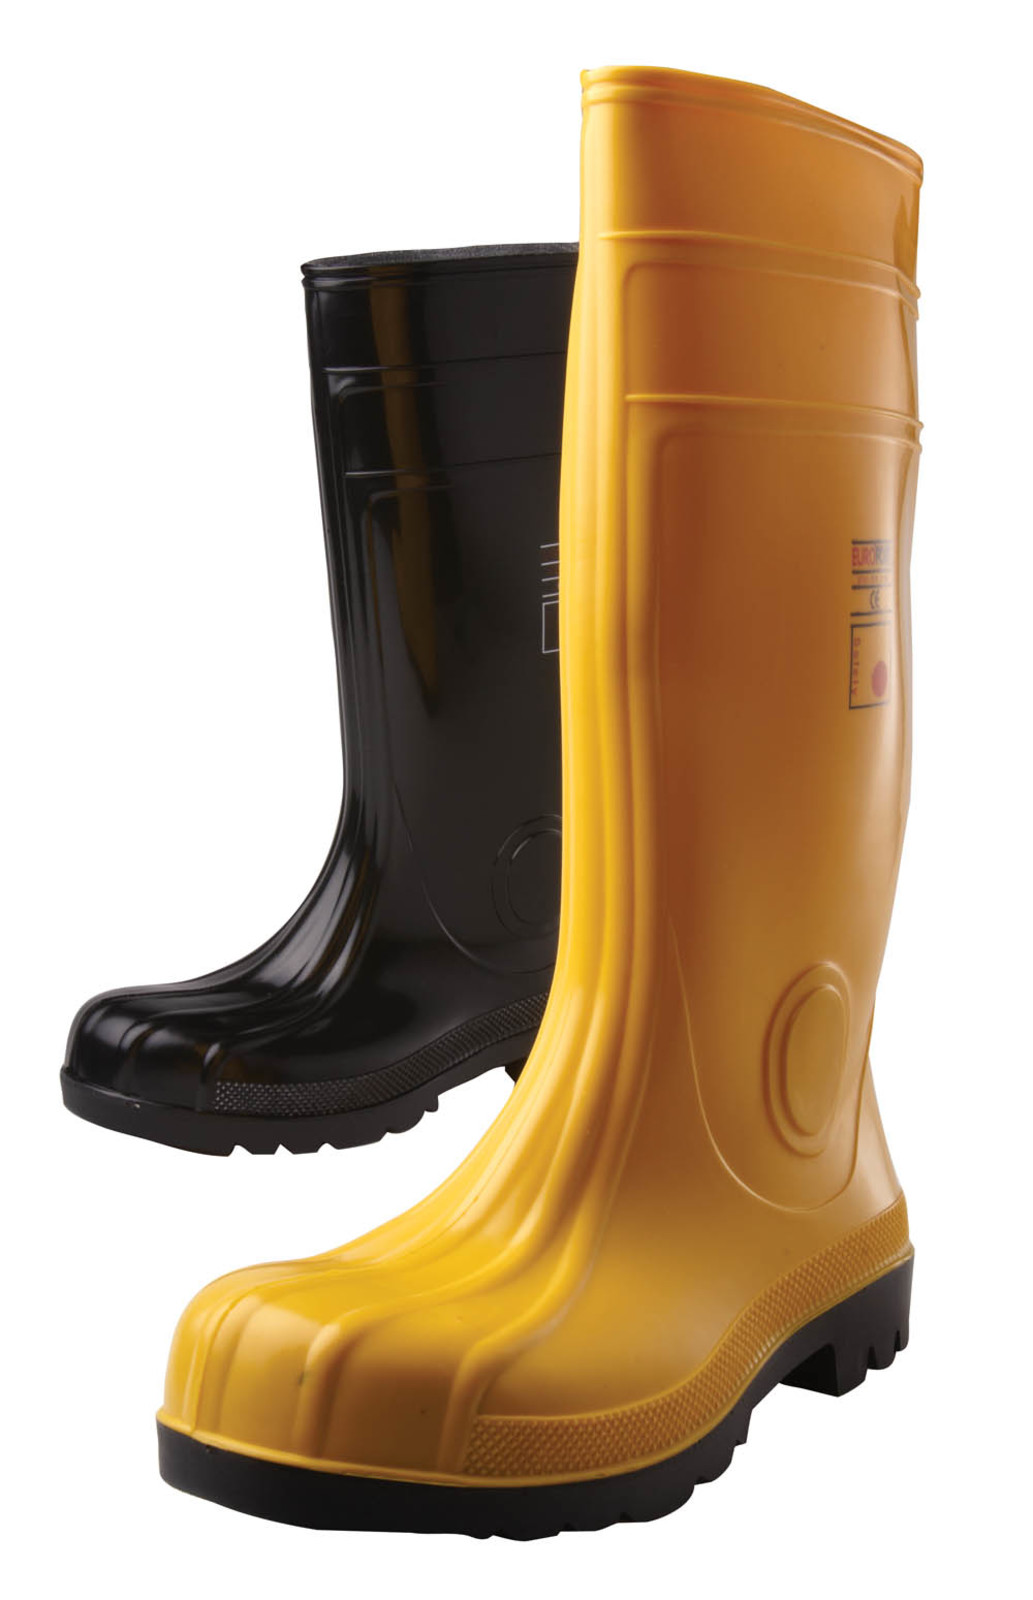 Gumáky Boots Eurofort  S5 - veľkosť: 38, farba: žltá